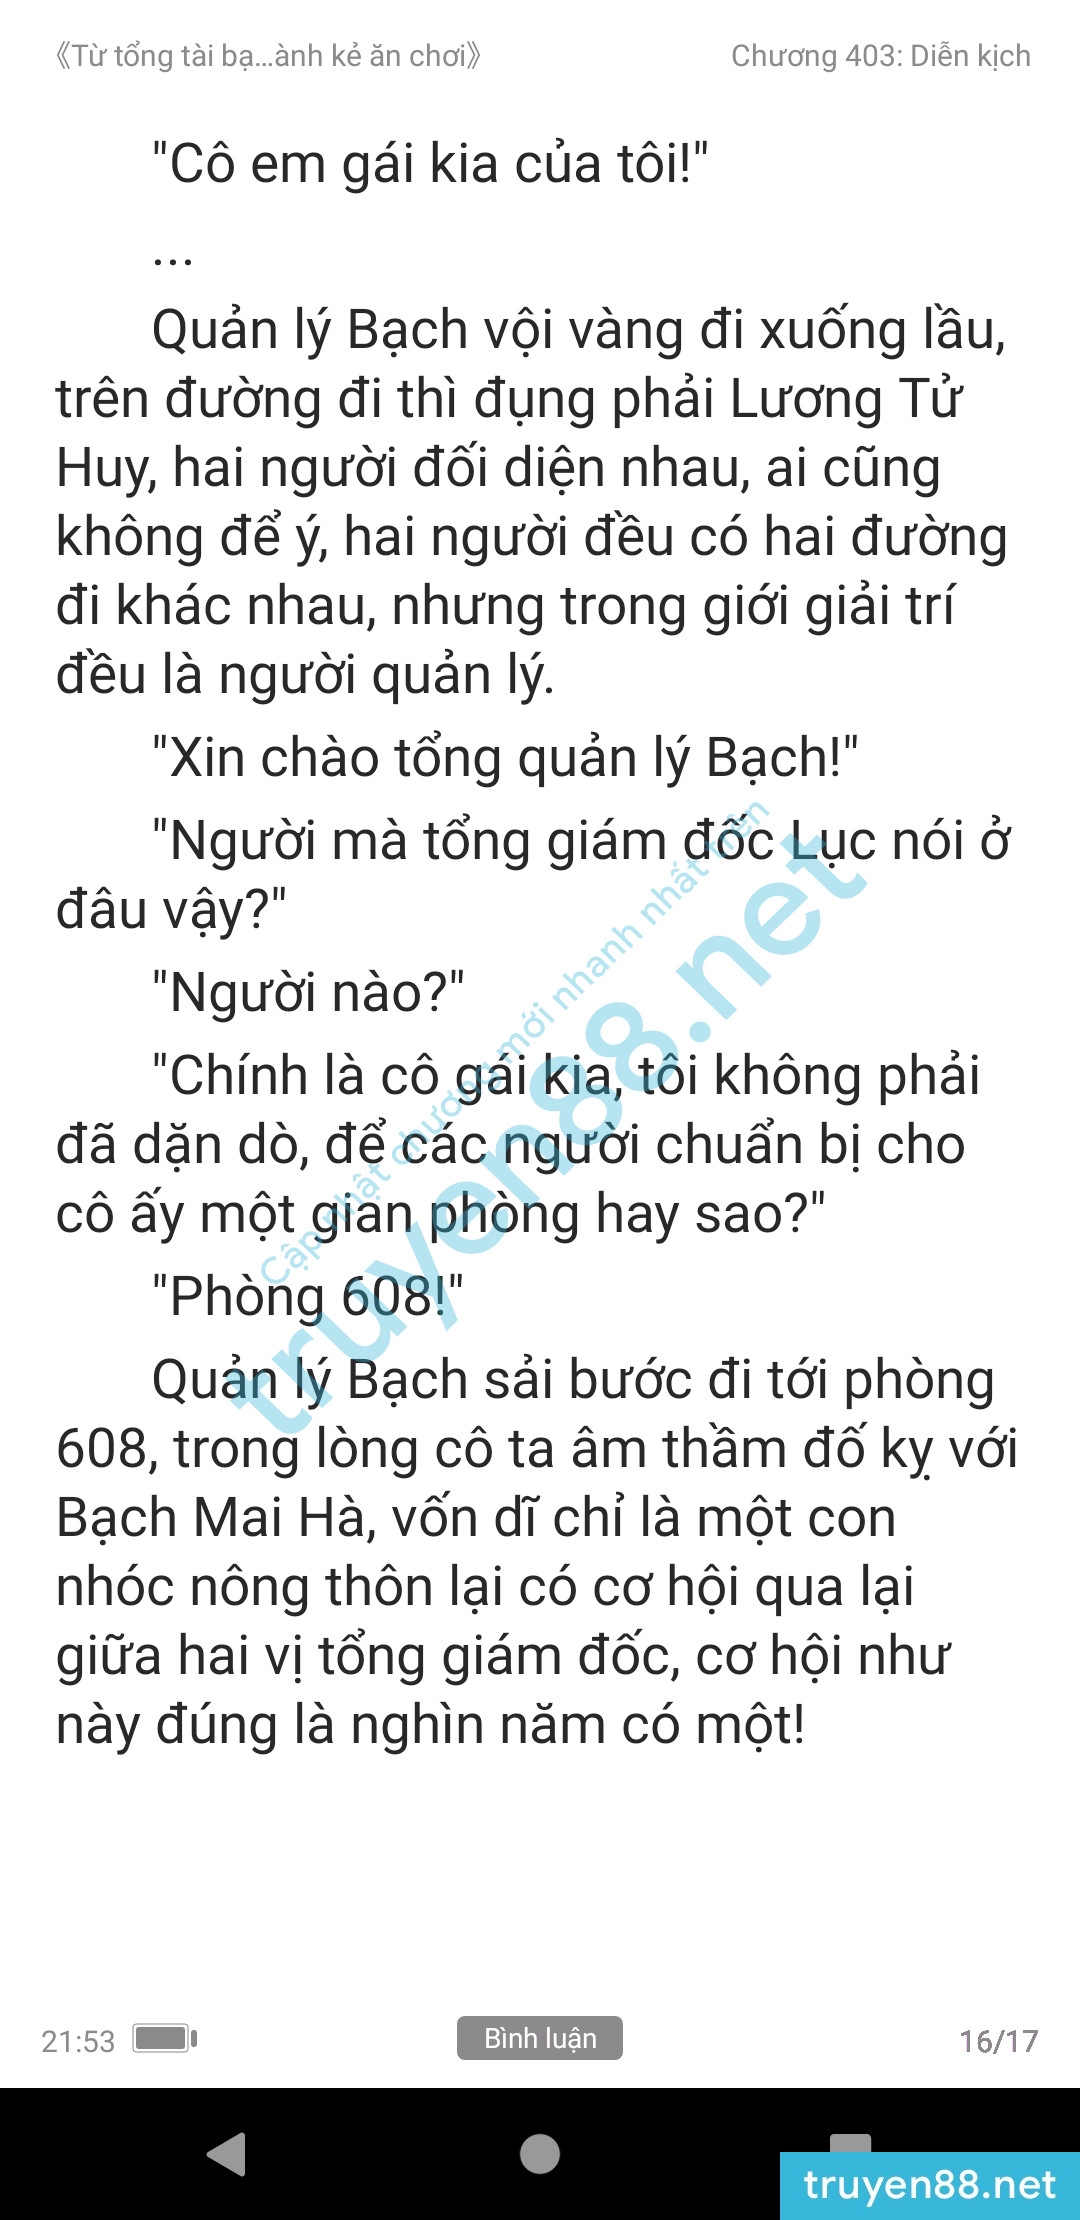 ke-an-choi-bien-tong-tai-403-2